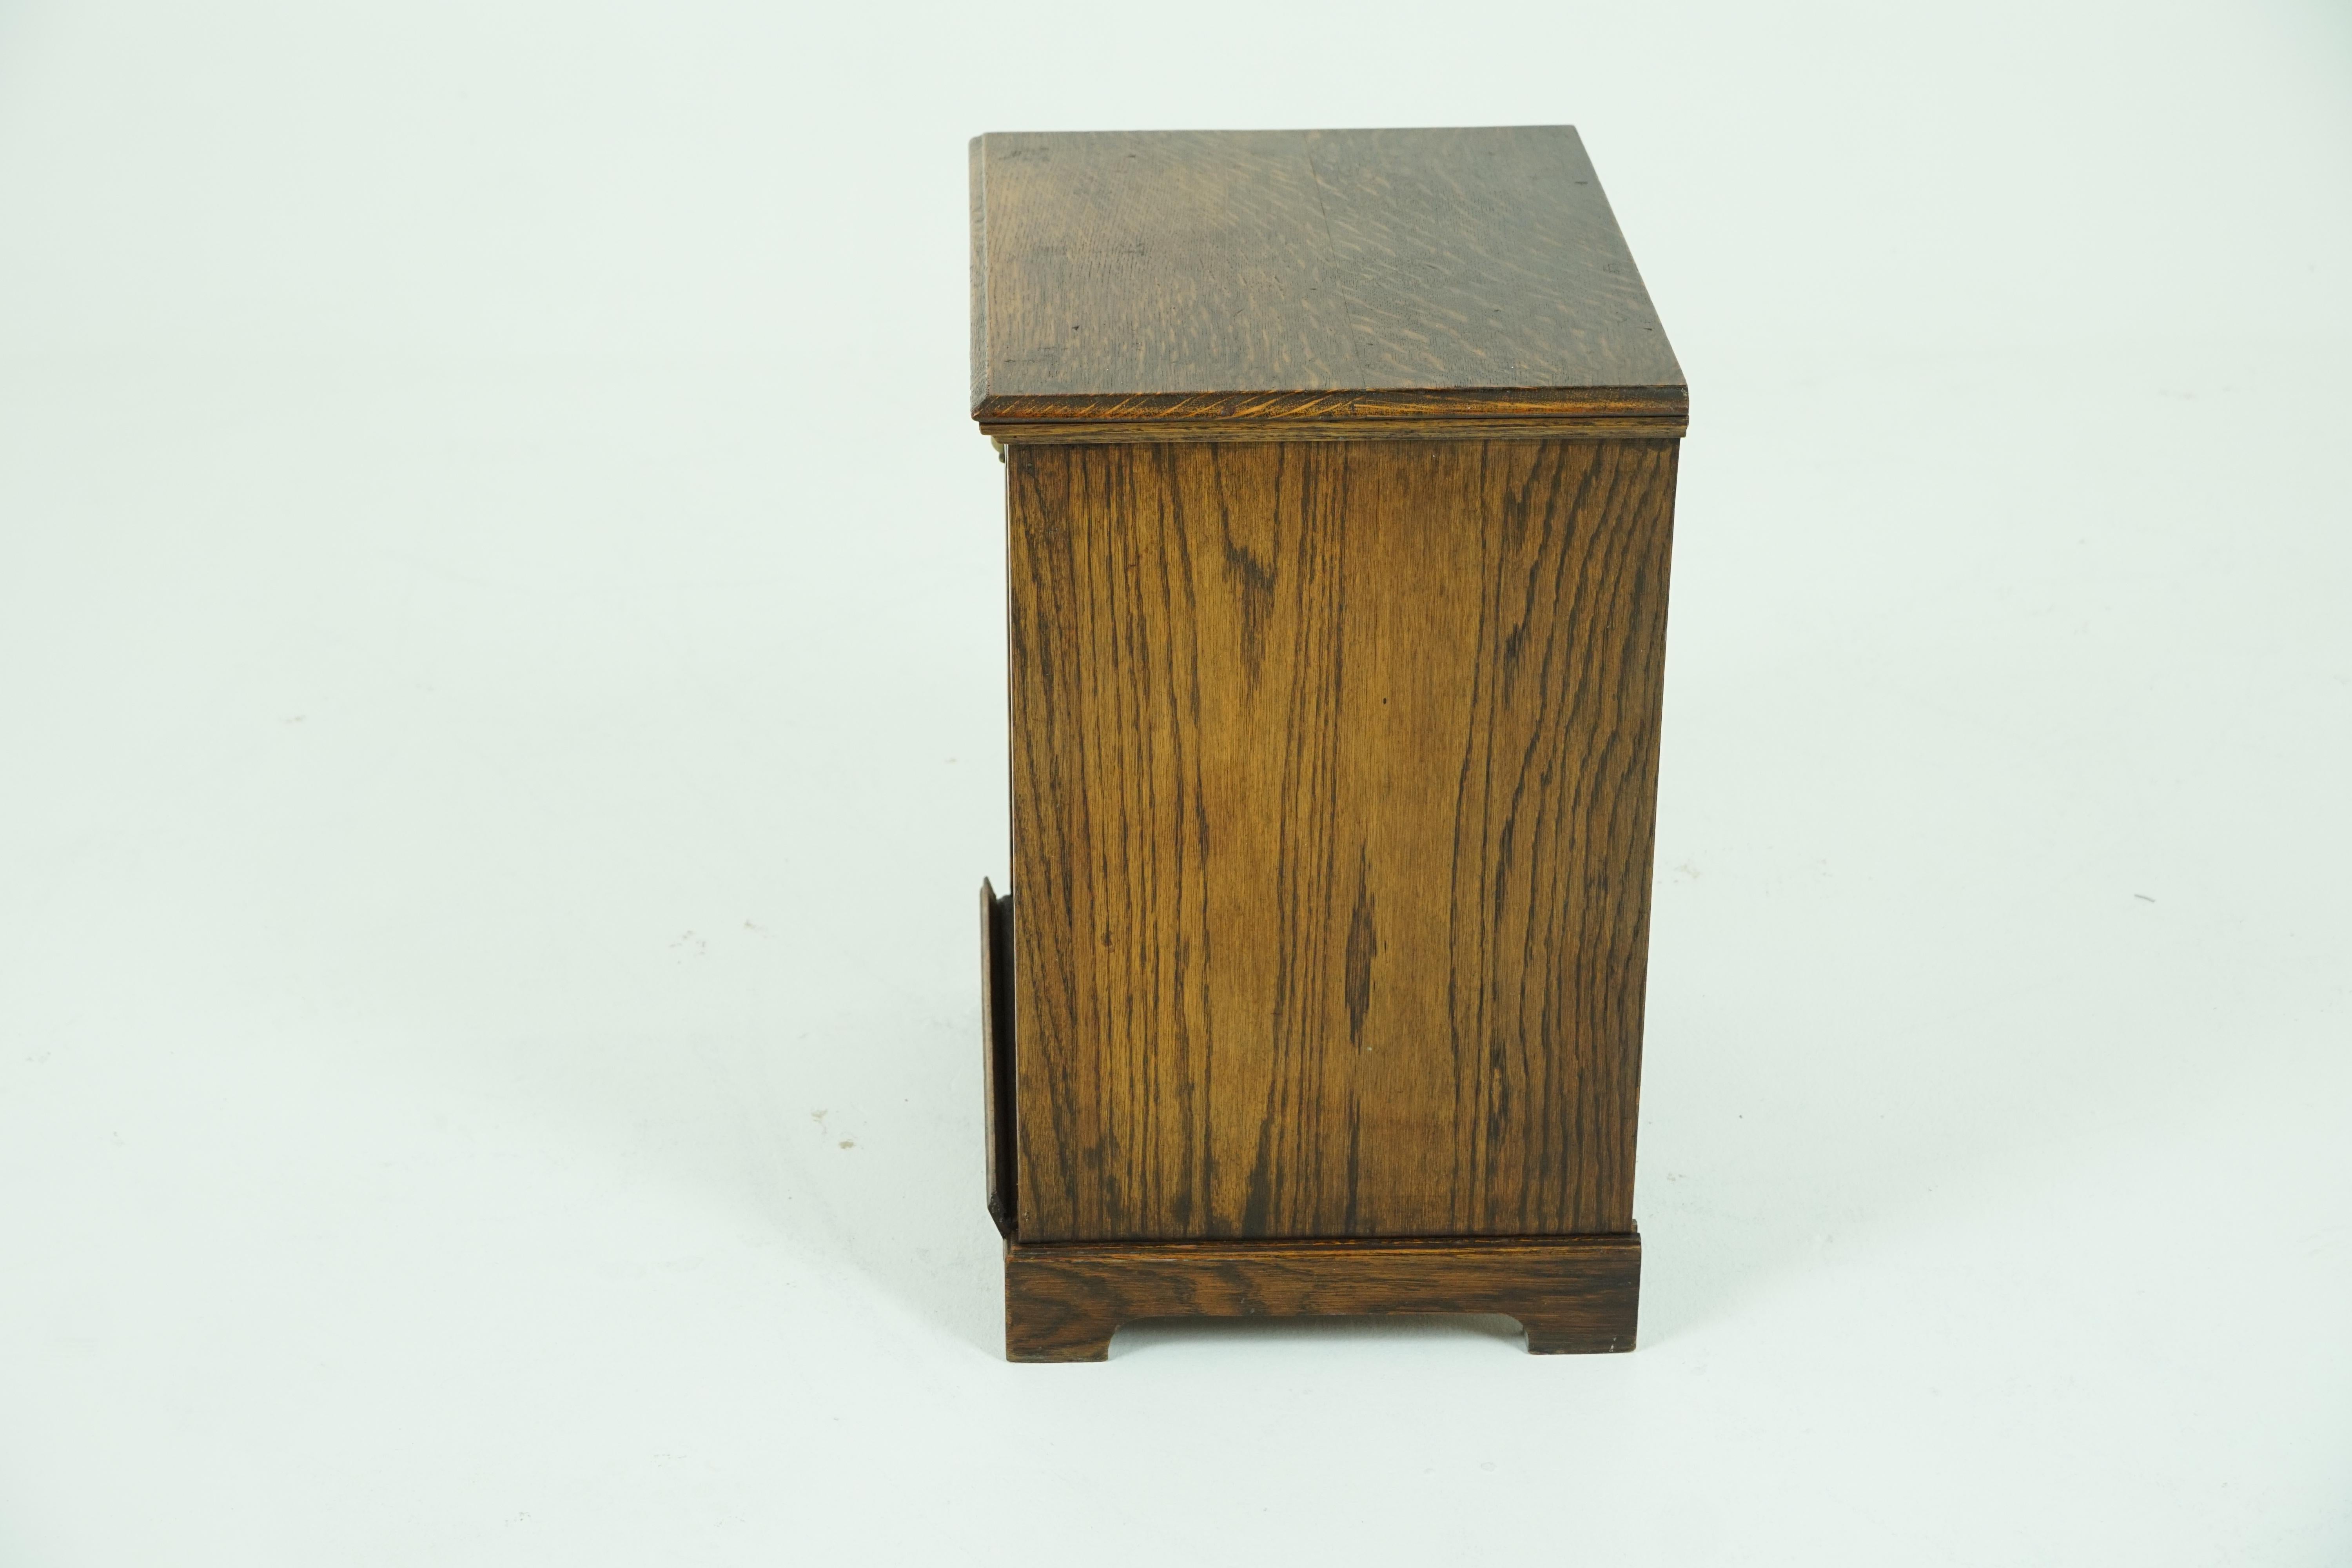 antique wooden coal box